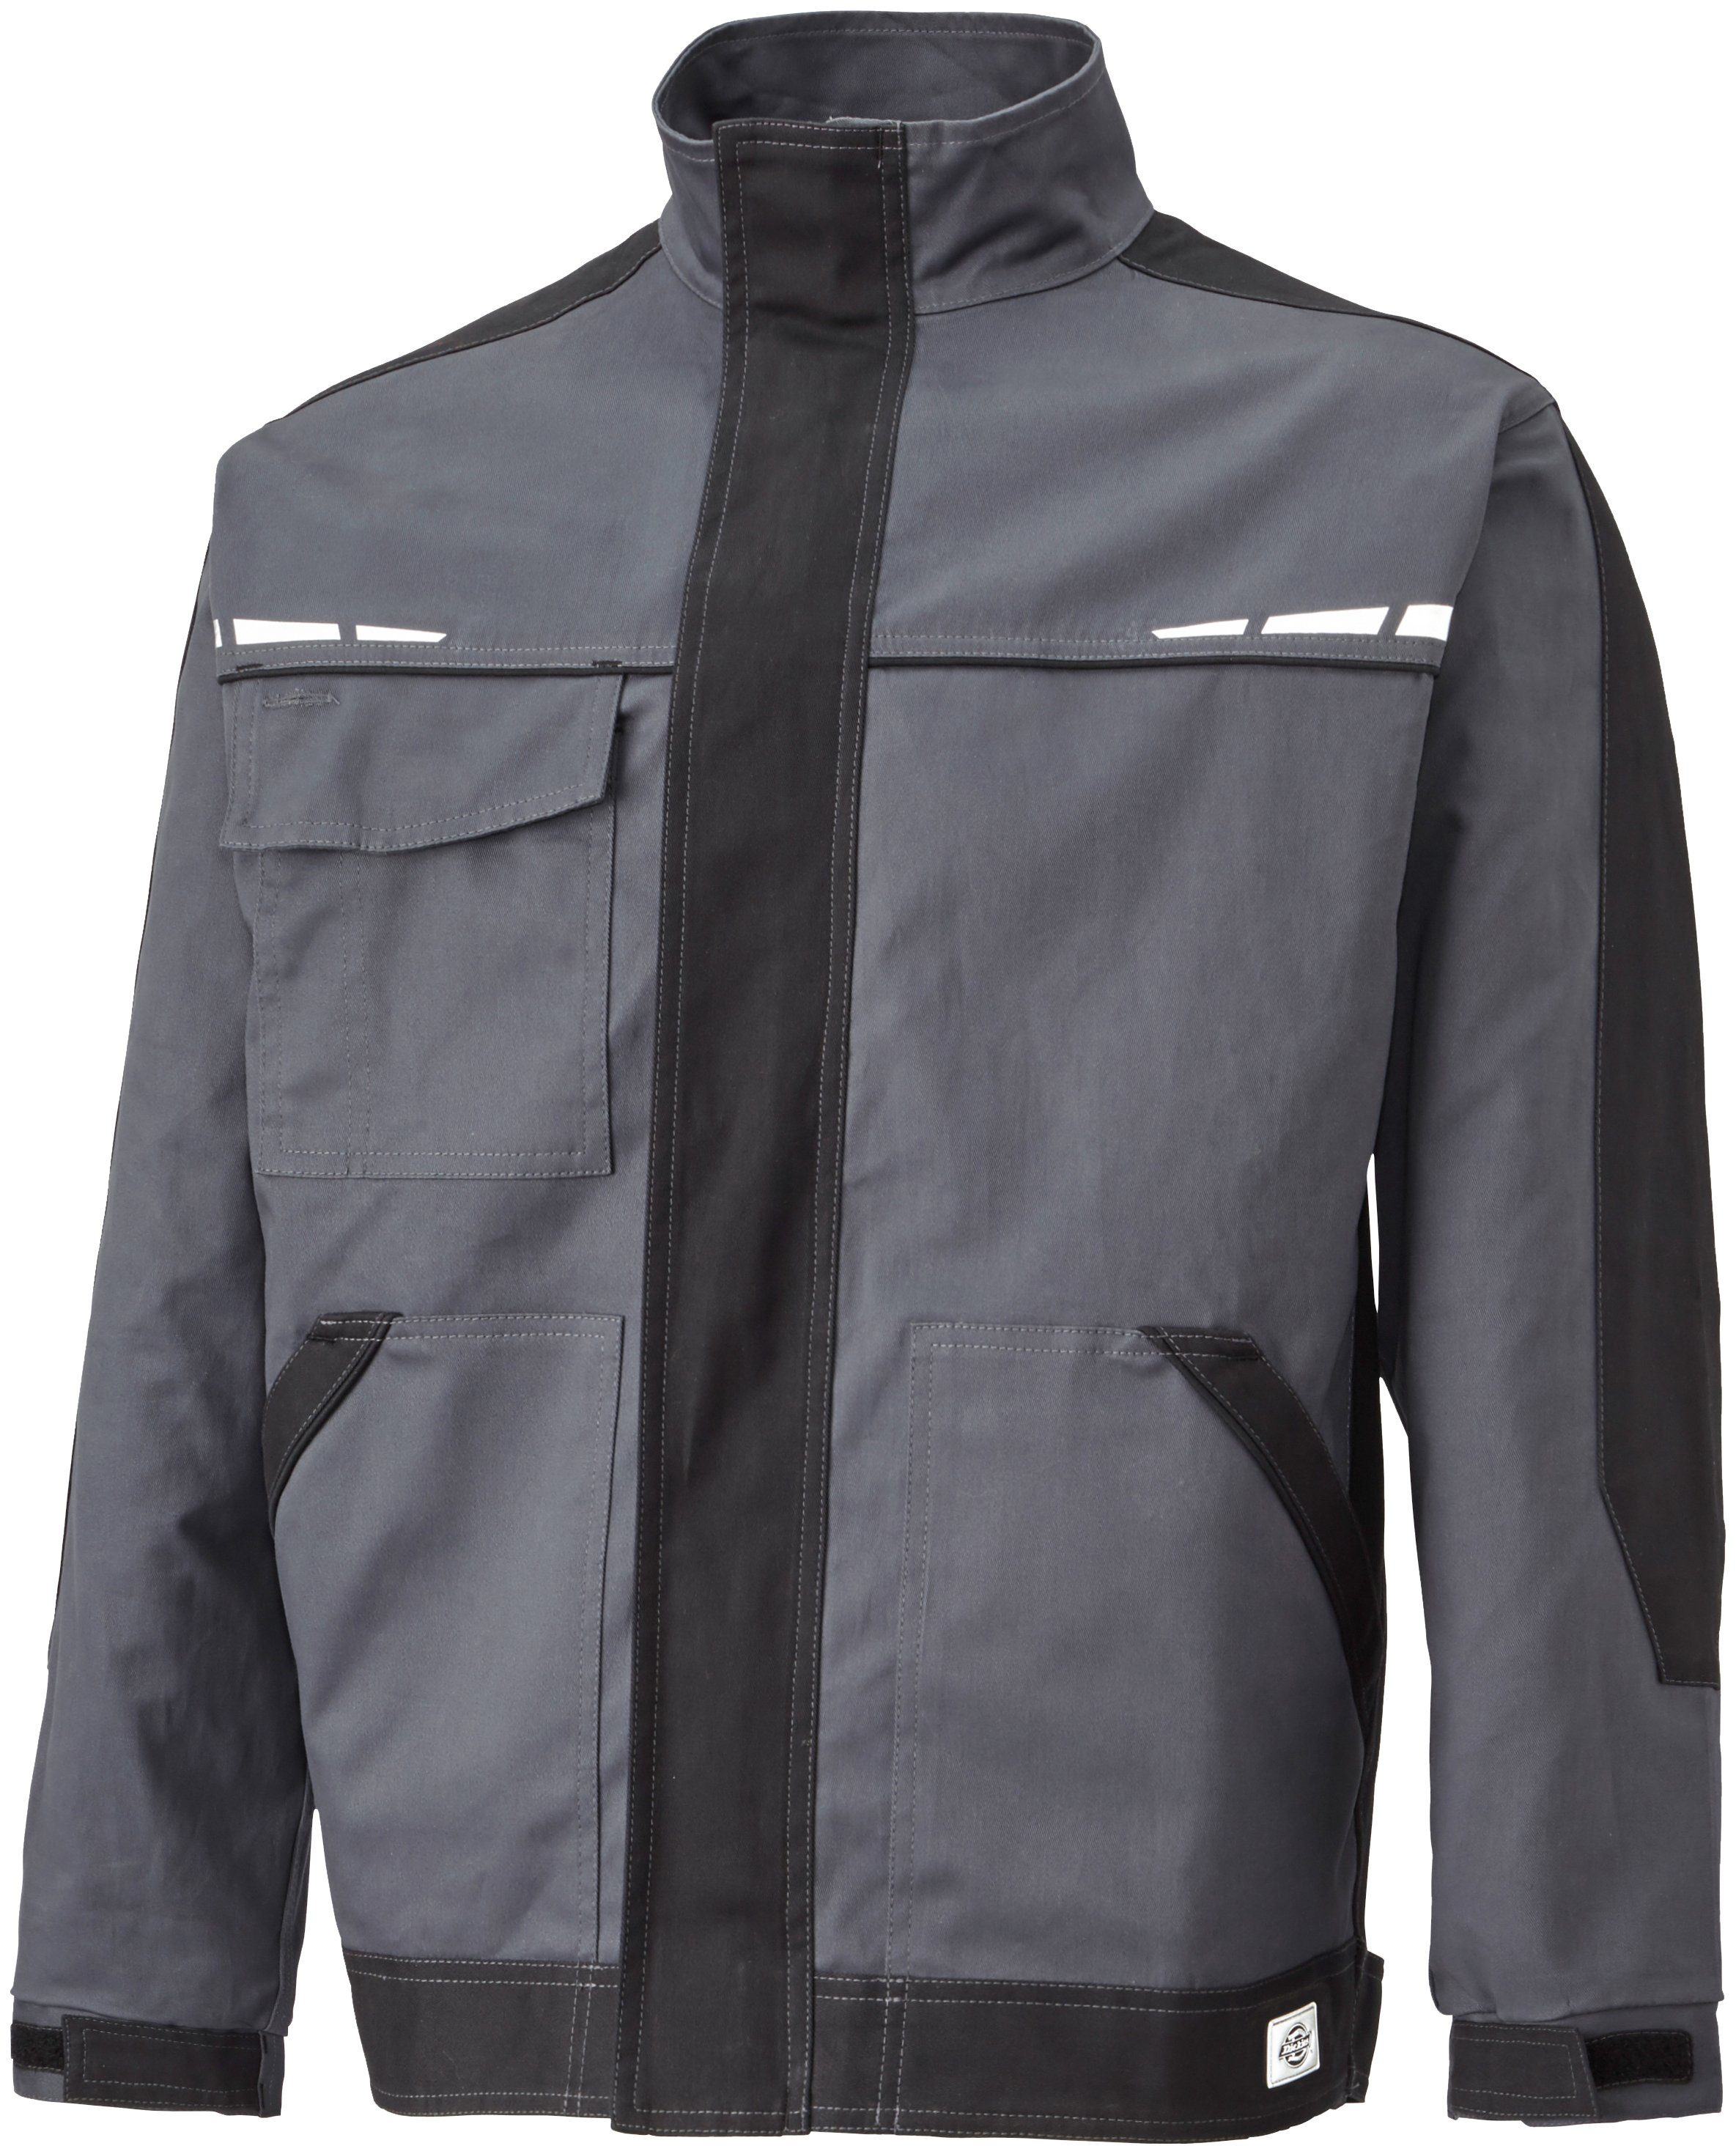 grau-schwarz Premium GDT Dickies Reflektierende Arbeitsjacke Designelemente